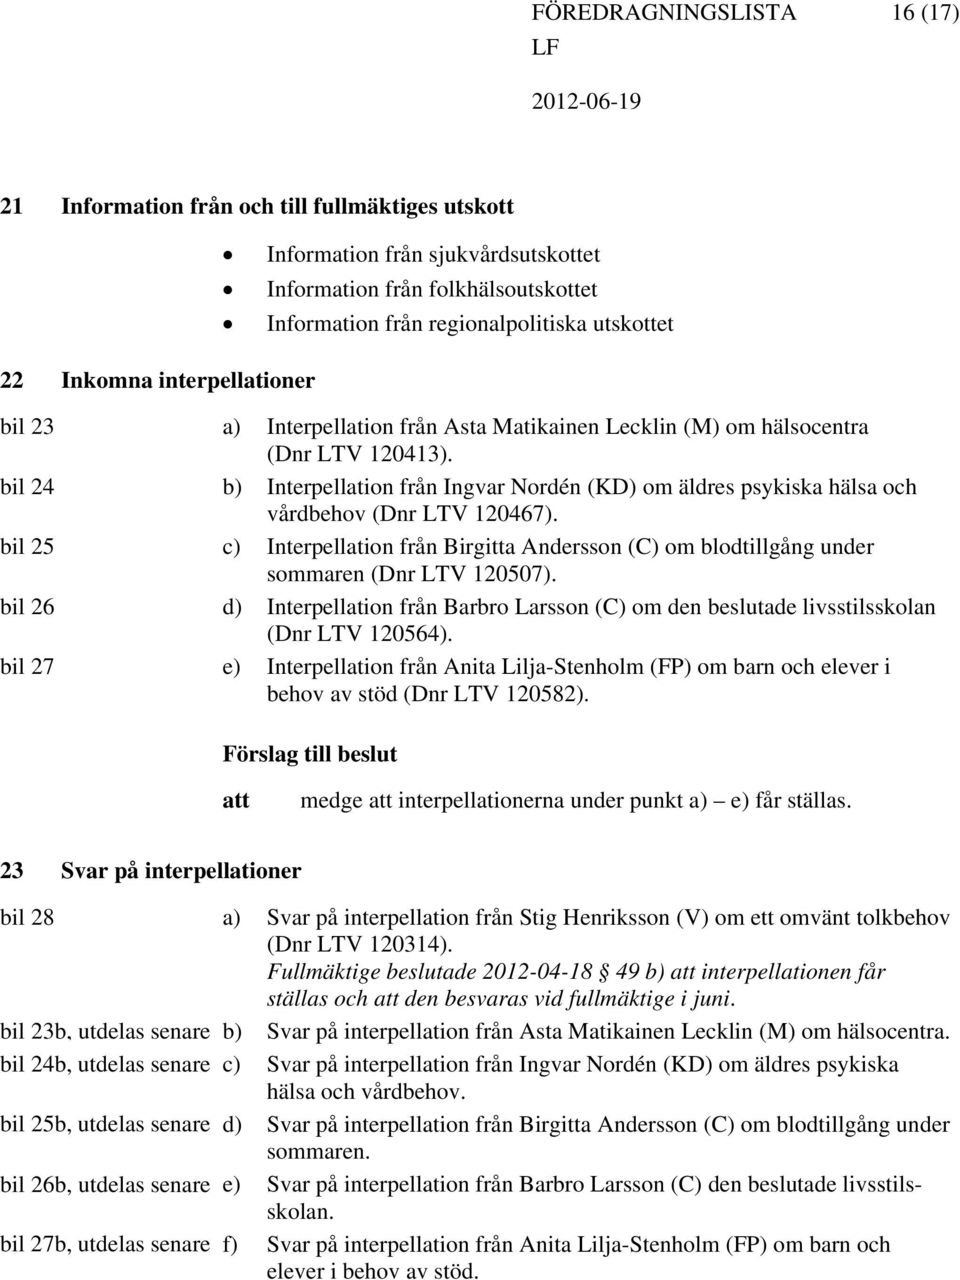 b) Interpellation från Ingvar Nordén (KD) om äldres psykiska hälsa och vårdbehov (Dnr LTV 120467). c) Interpellation från Birgitta Andersson (C) om blodtillgång under sommaren (Dnr LTV 120507).